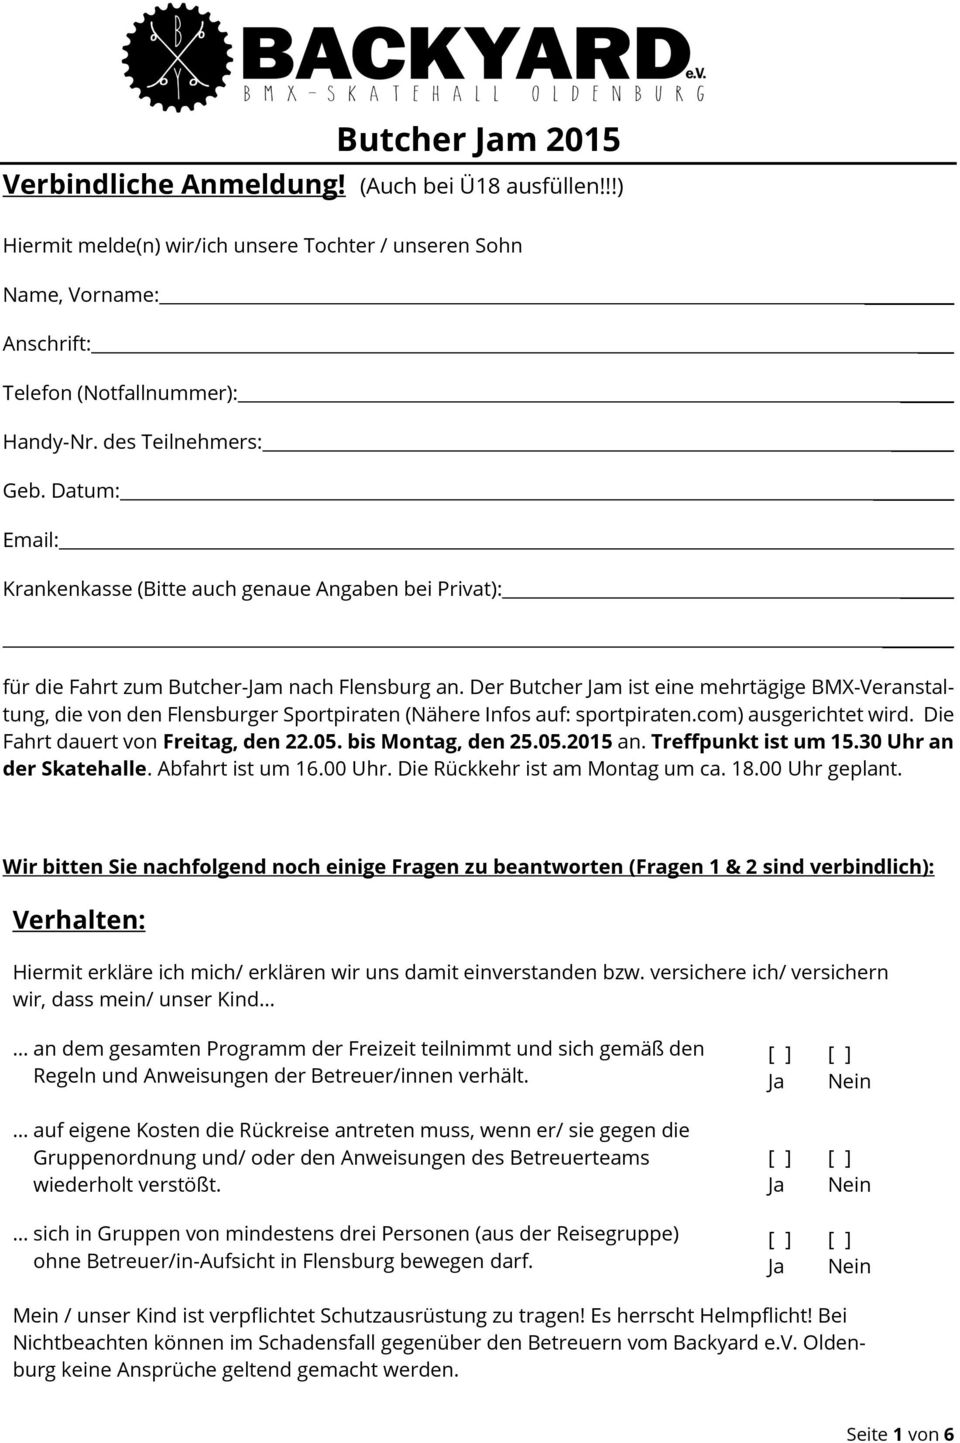 Der Butcher m ist eine mehrtägige BMX-Veranstaltung, die von den Flensburger Sportpiraten (Nähere Infos auf: sportpiraten.com) ausgerichtet wird. Die Fahrt dauert von Freitag, den 22.05.